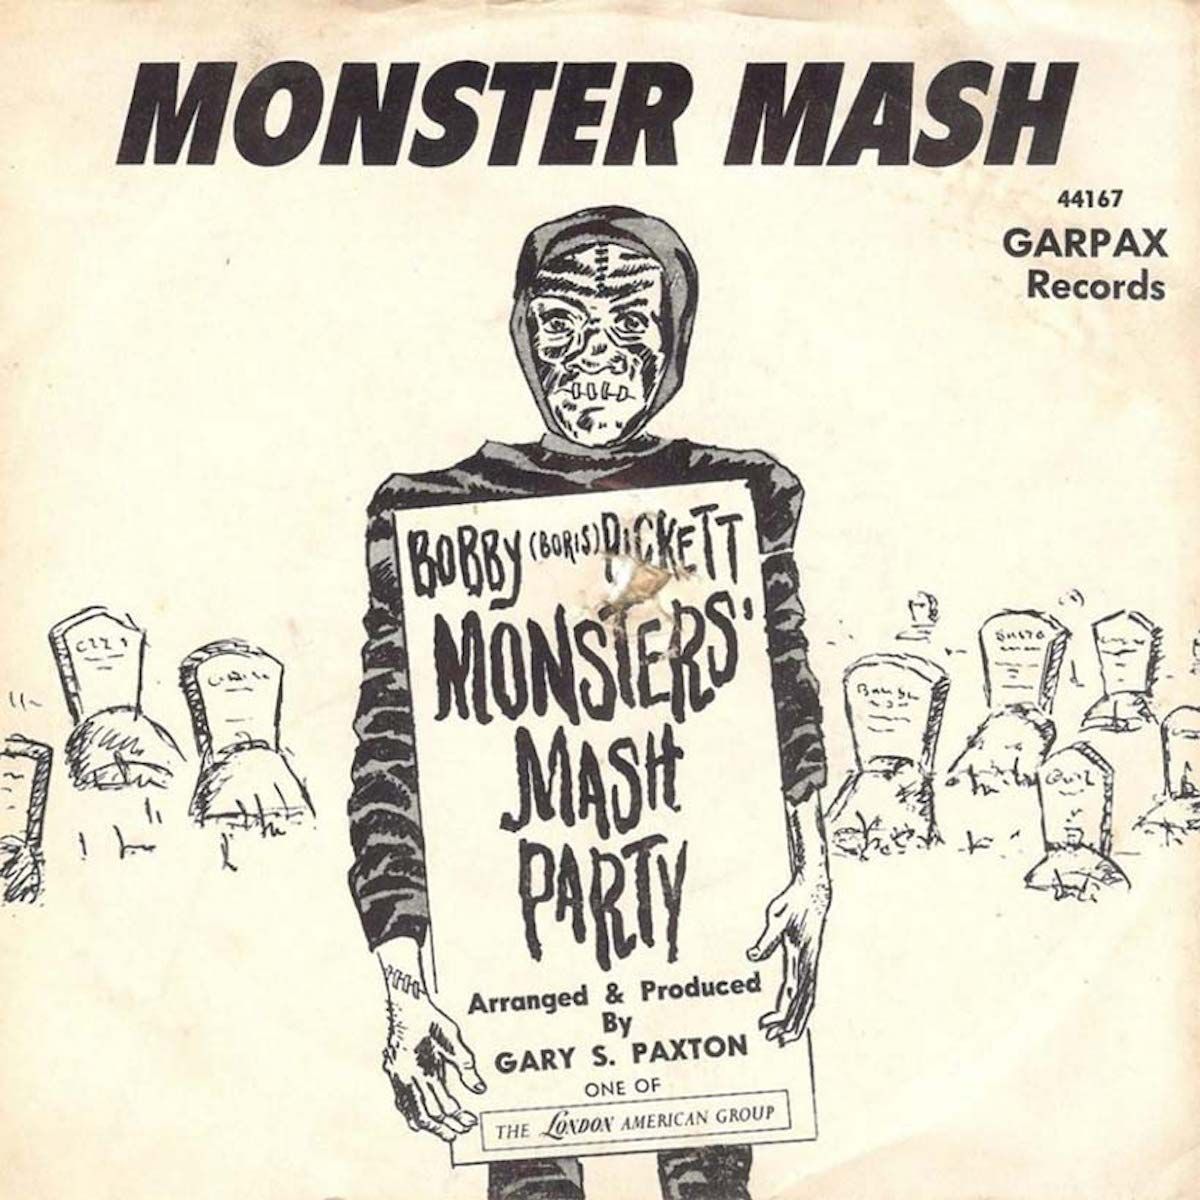 monstrų misos įrašas, 1960-ųjų vieno smūgio stebuklas